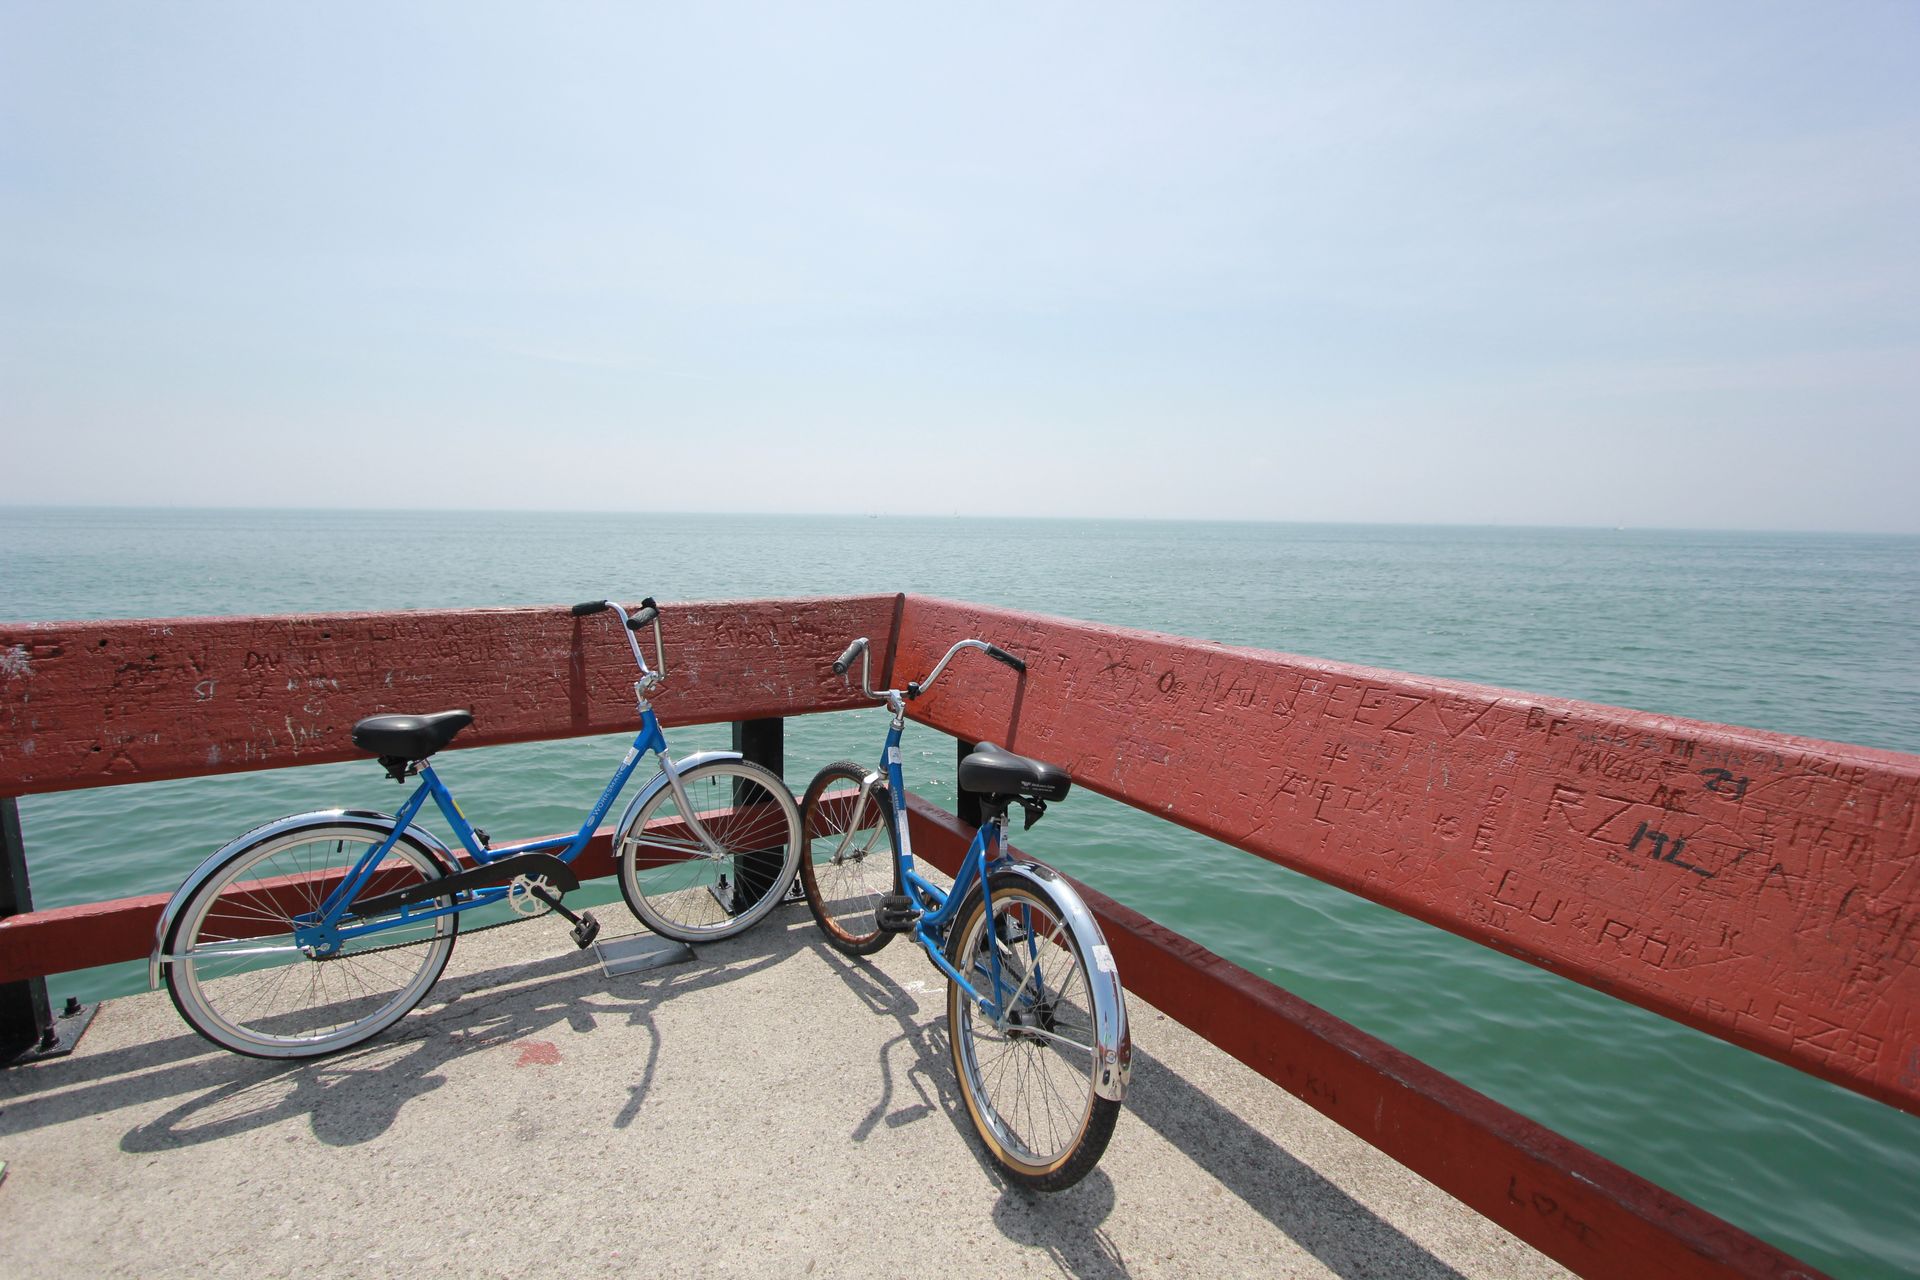 La gestion de l'autonomie du smartphone est indispensable pour garer ses deux vélos bleus contre une rambarde au bord de la mer !